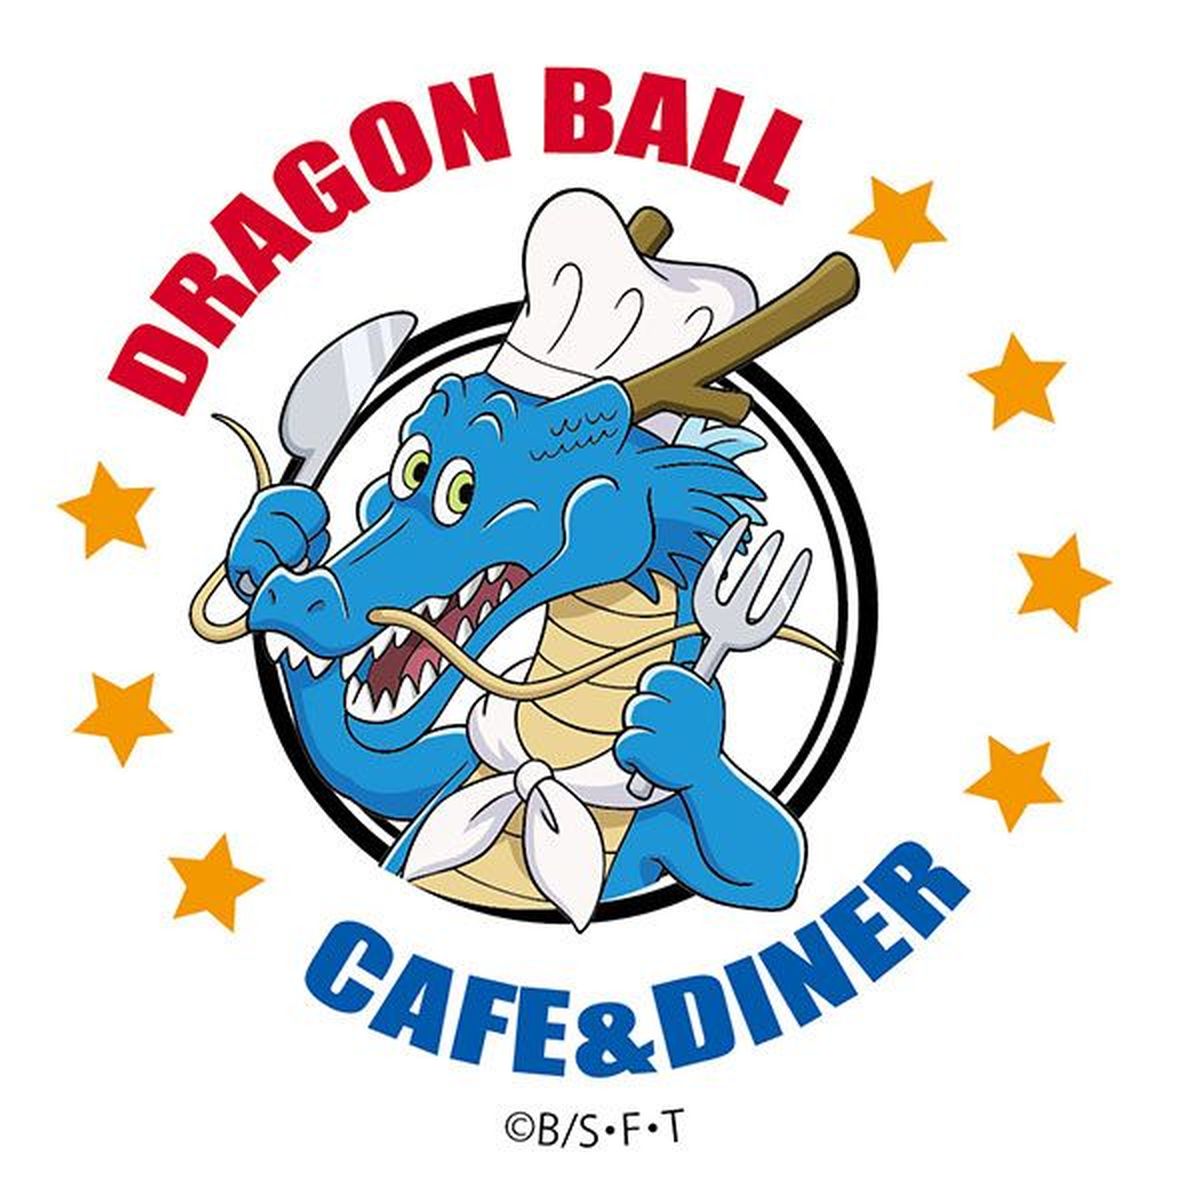 Dragon Ball Café & Diner